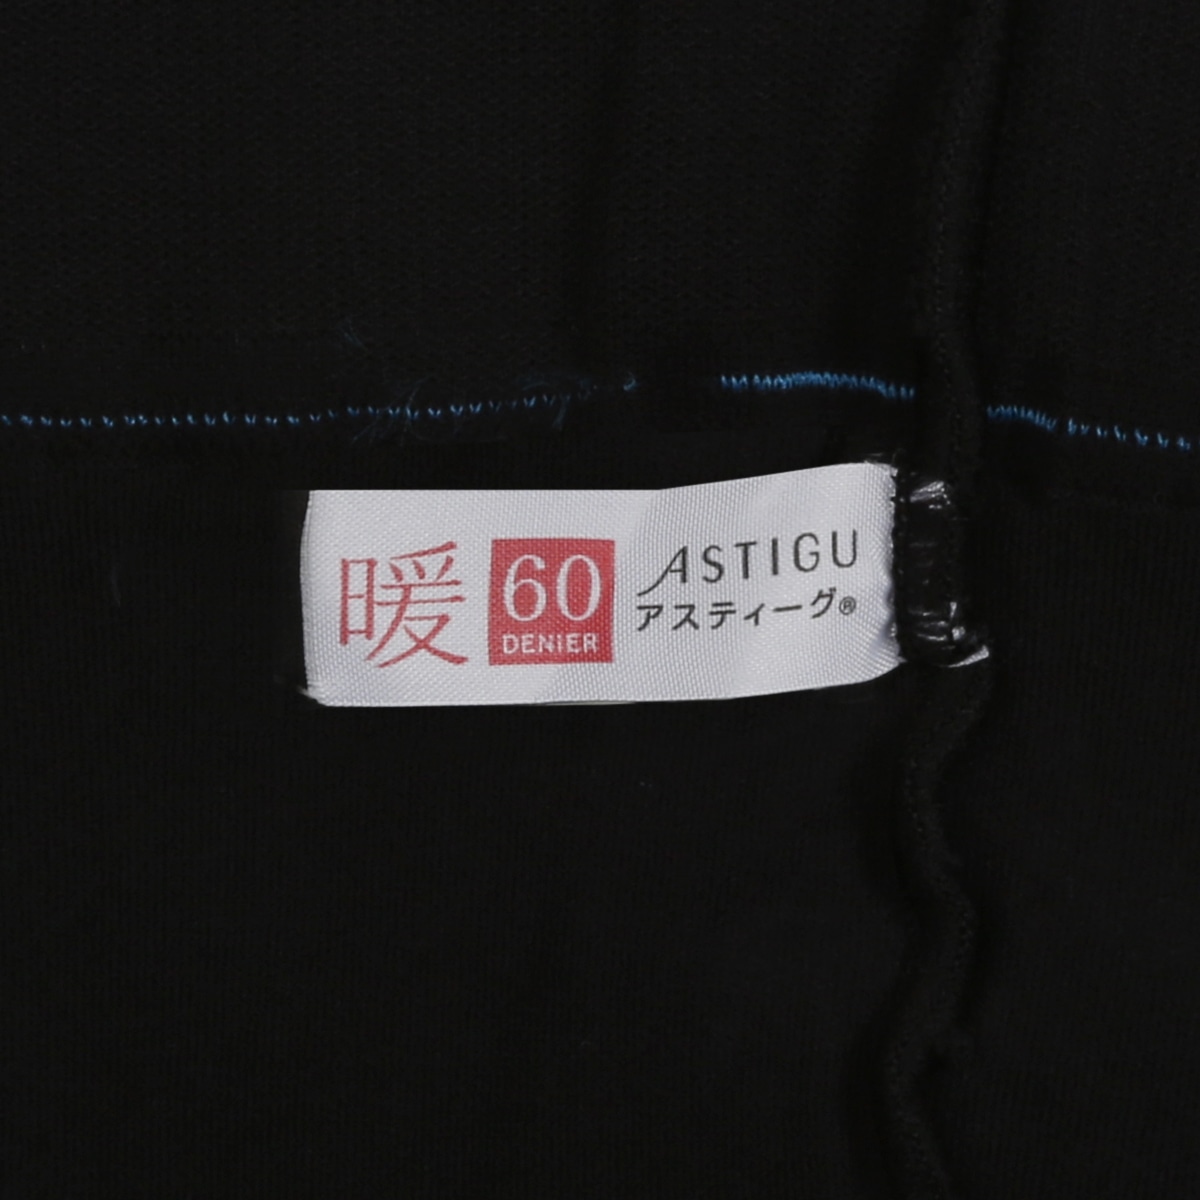 ASTIGU 【暖】 やわらか発熱タイツ 60デニール